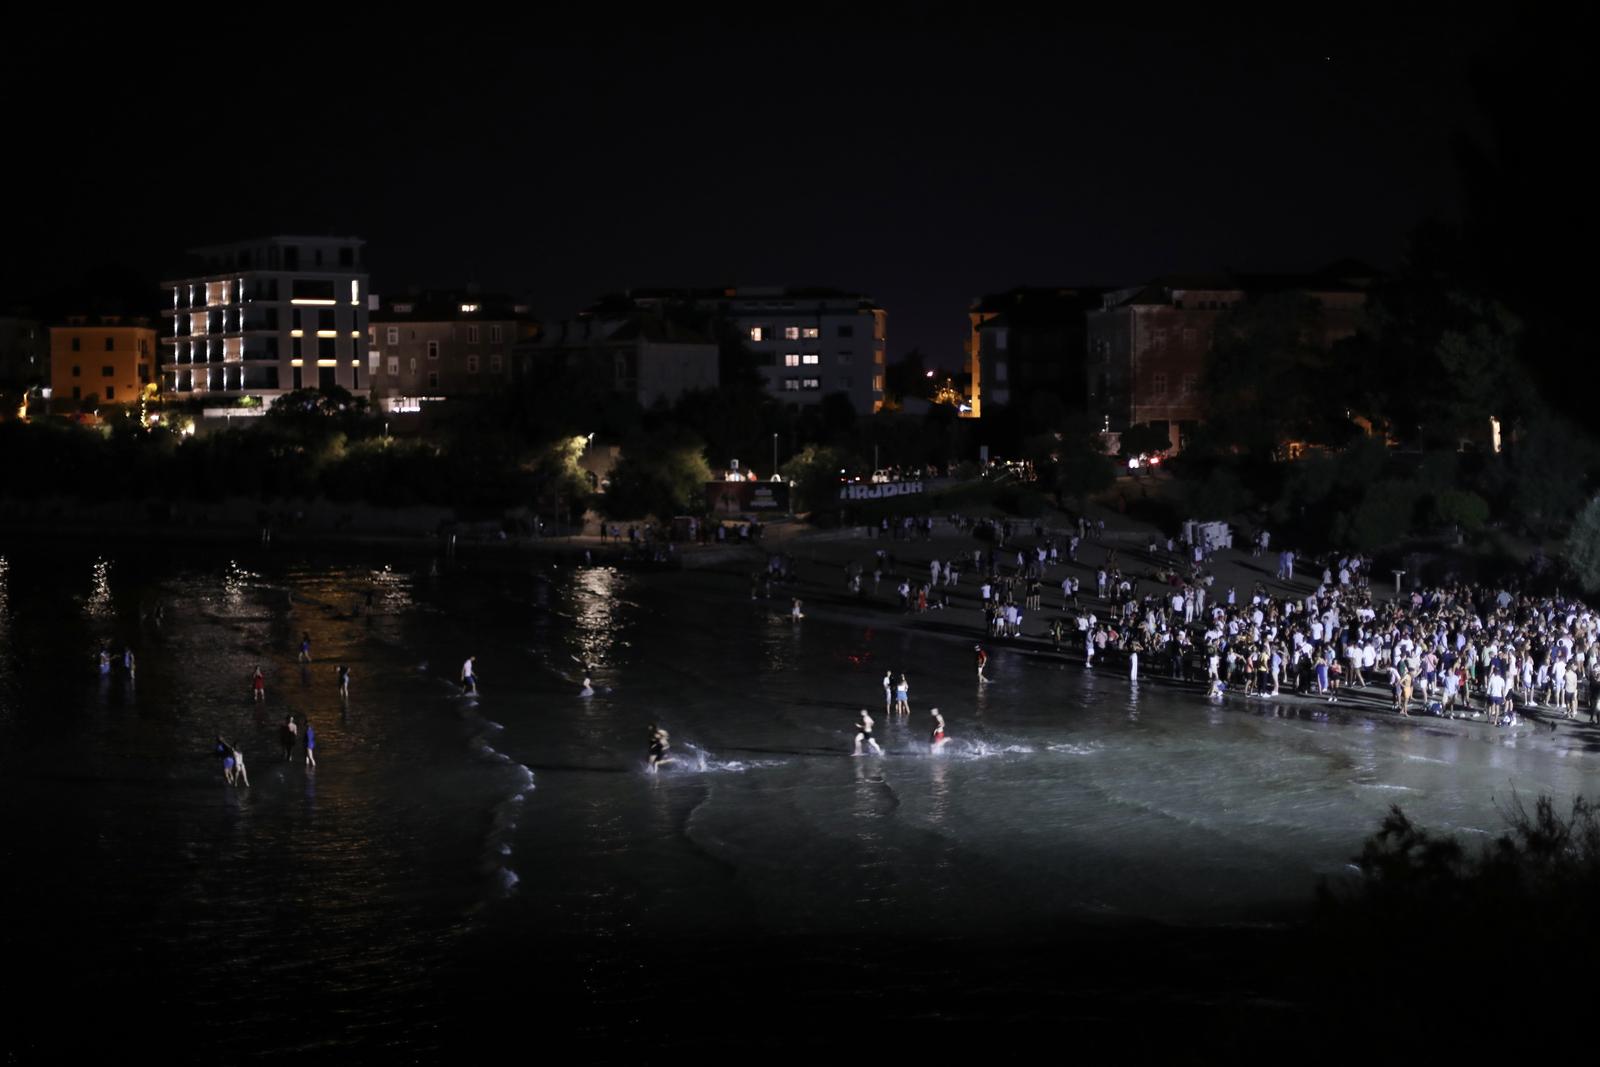 31.07.2021., Split - Kupaliste Bacvice nakon zatvaranja ugostiteljskih objekata postalo okupljaliste mladih. rPhoto: Ivo Cagalj/PIXSELL